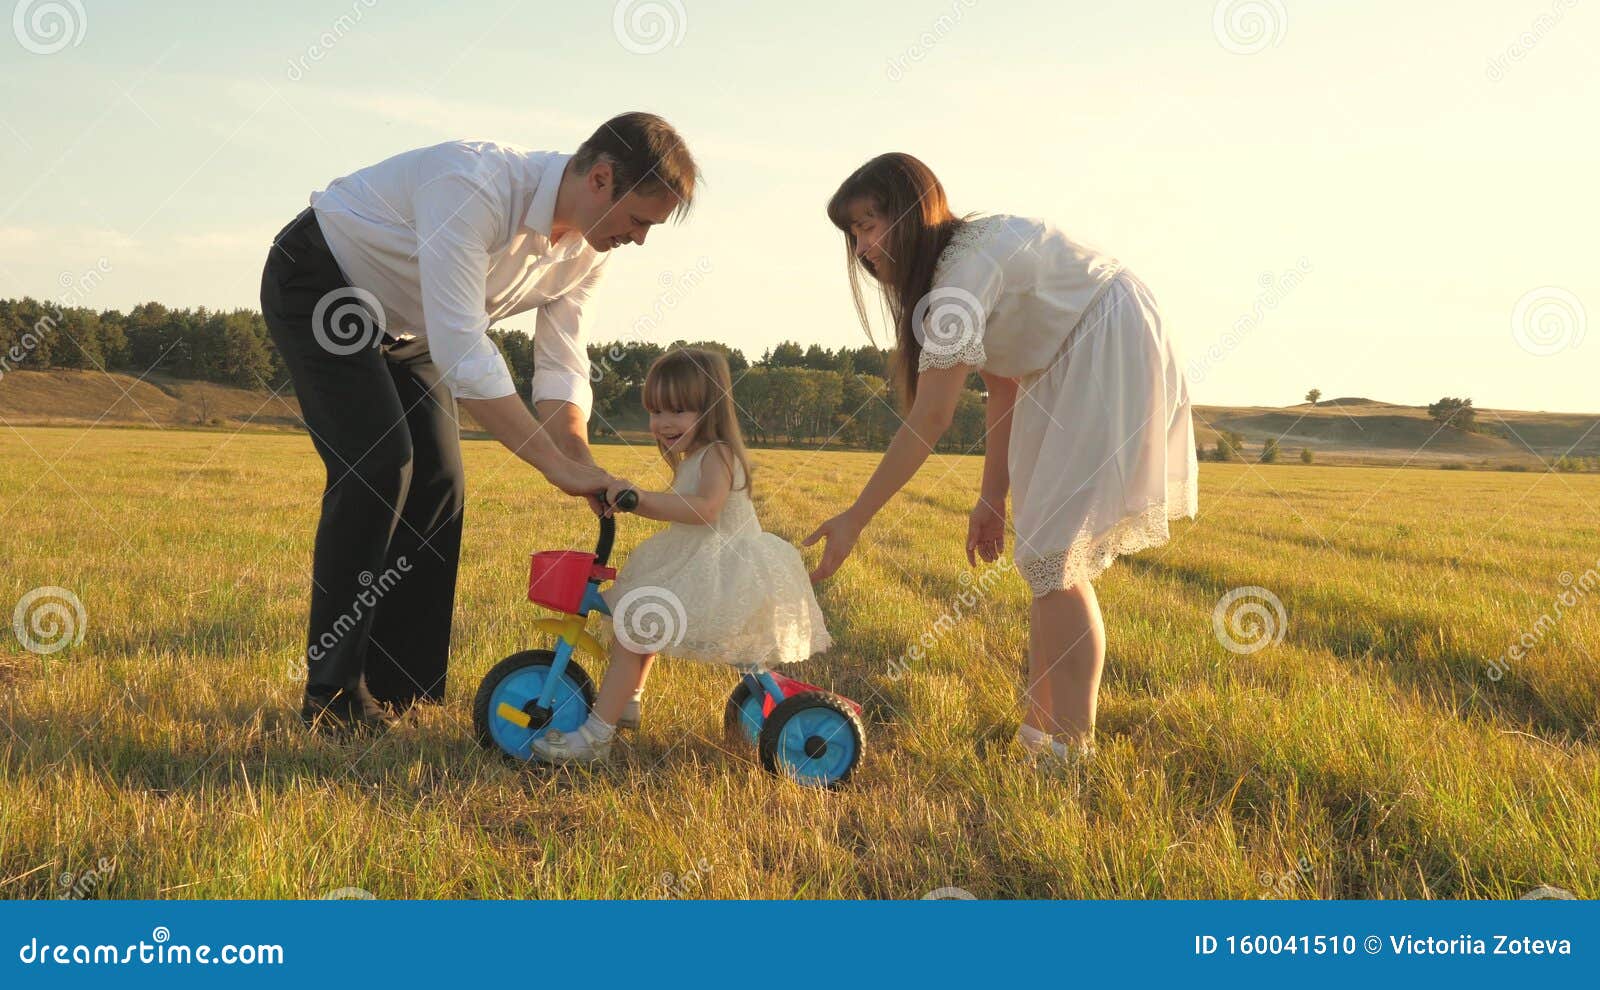 Папа учит дочку заниматься. Папа фотографирует детей на лужайке. Учил отец и мать. Отец учит сына мать учит дочь. Мама учит дочь кататься на велосипеде.